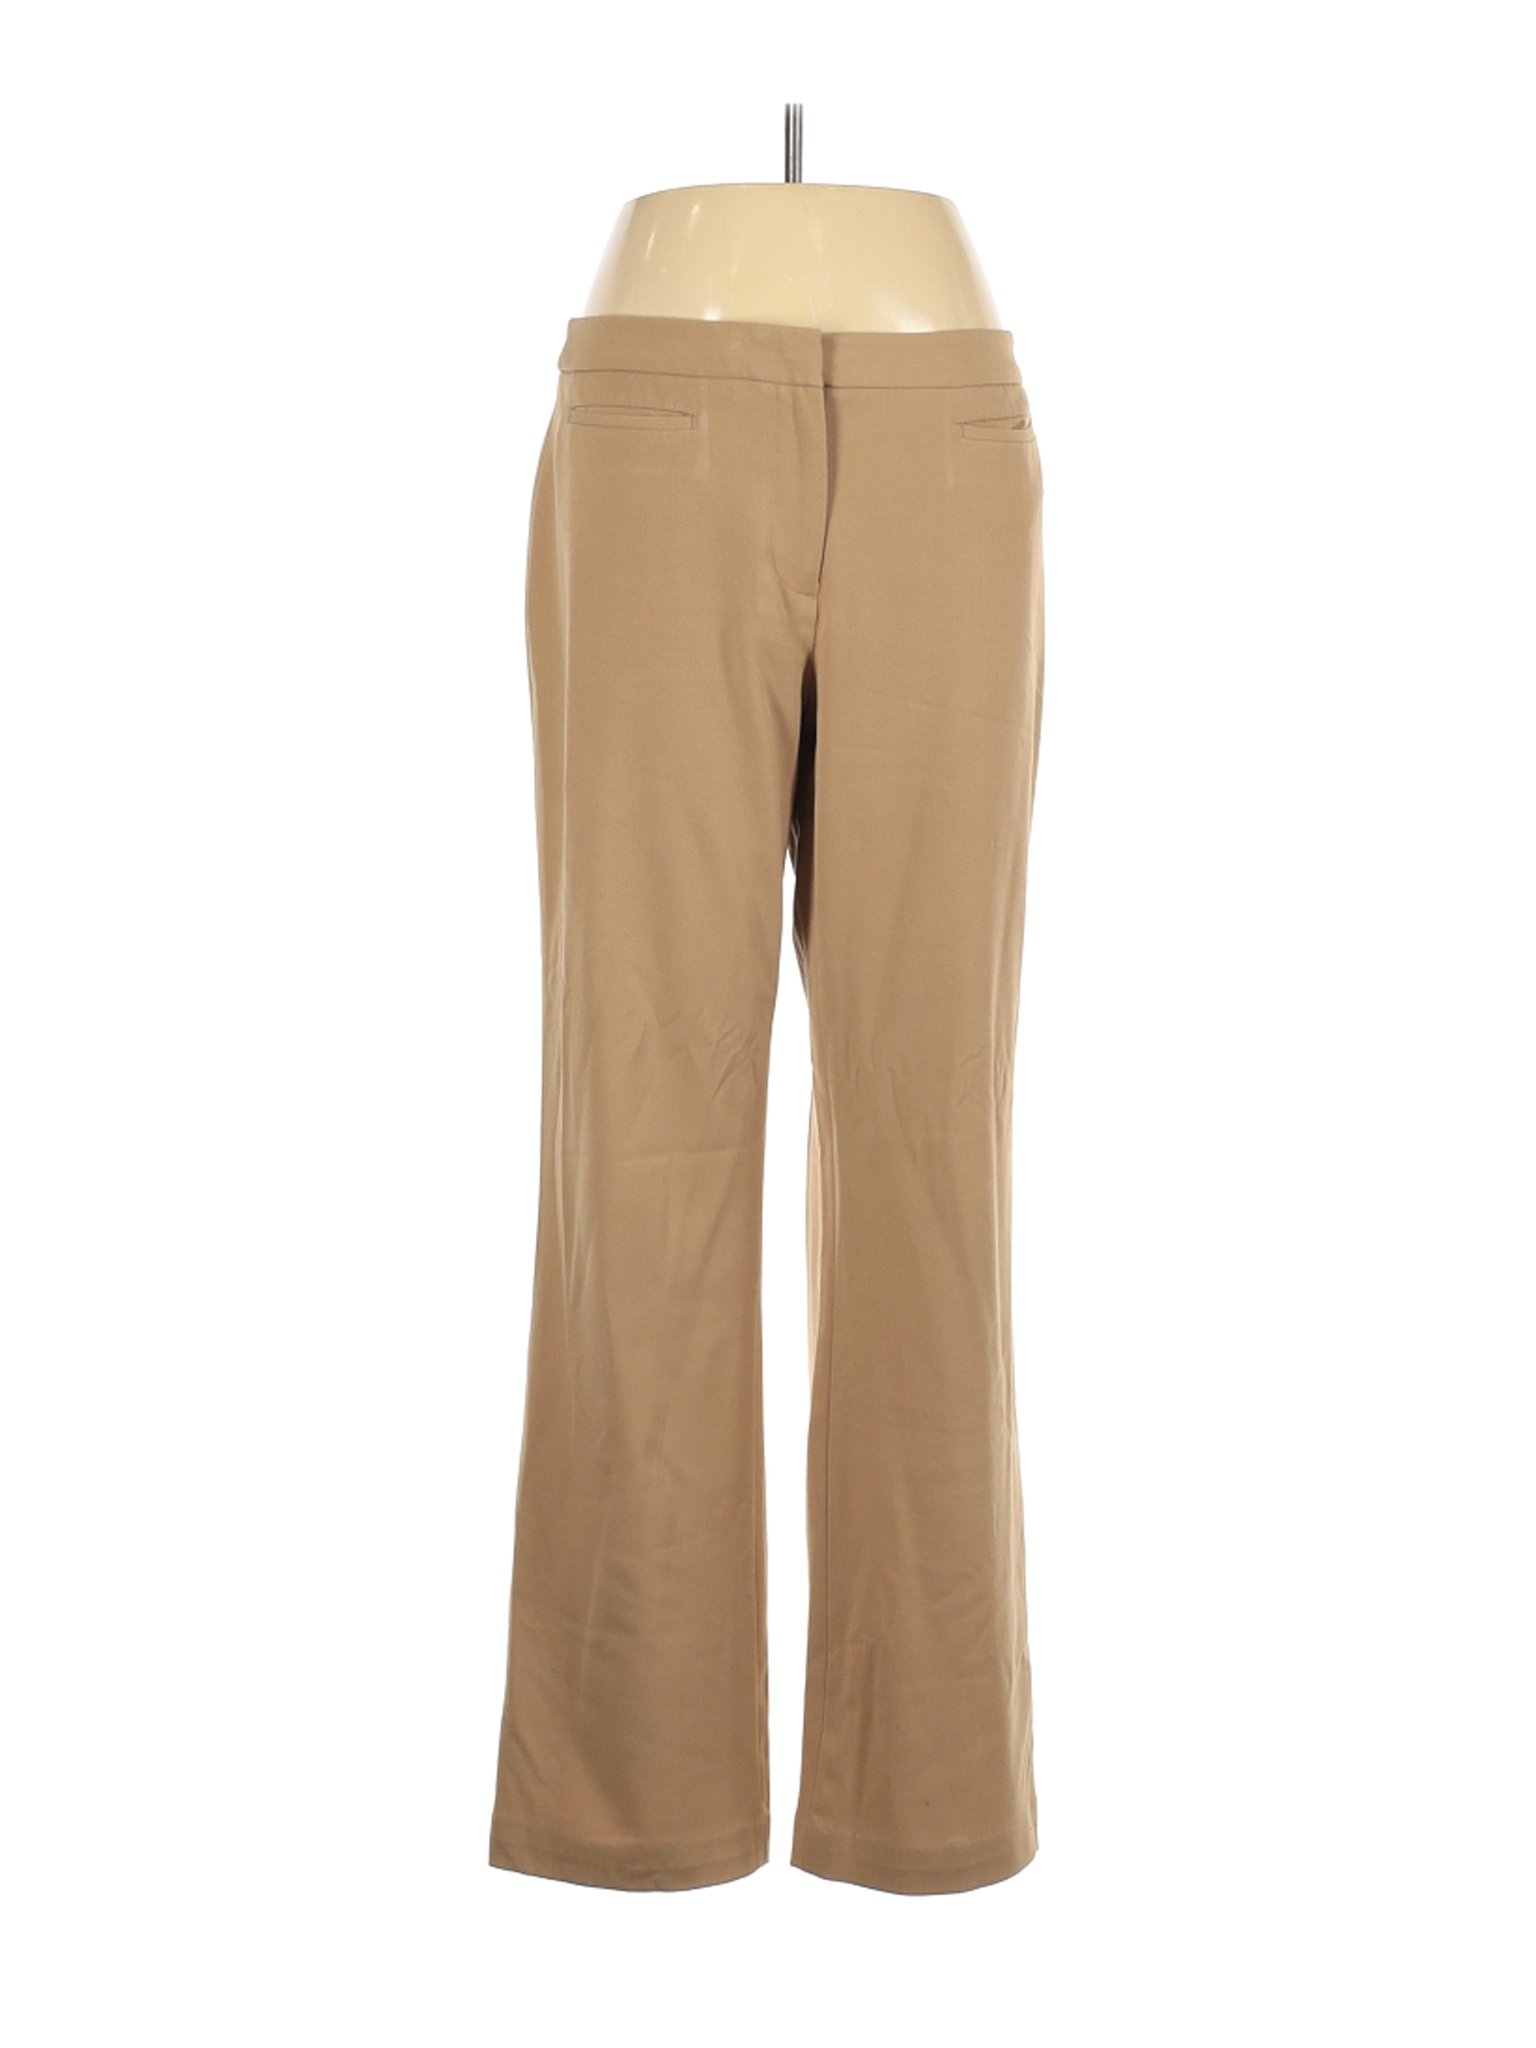 Mac & Jac Women Brown Dress Pants 10 | eBay